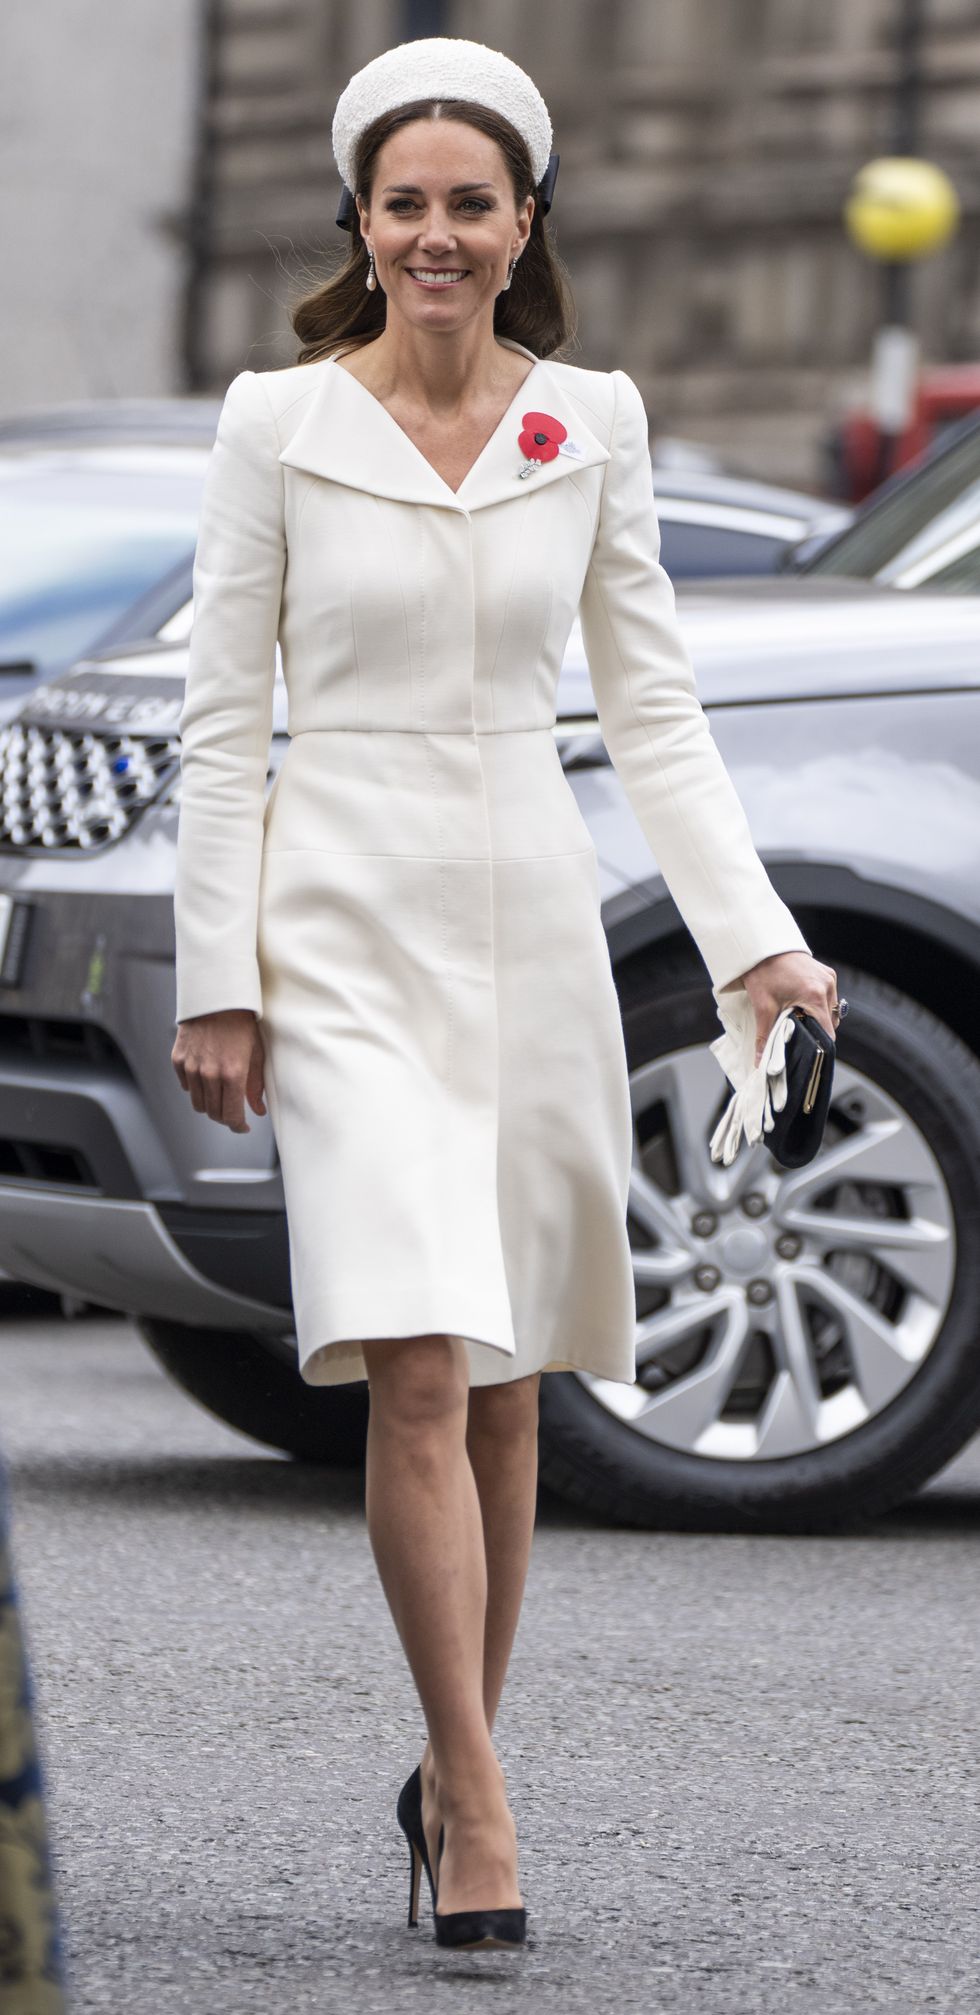 Gisele Bündchen Puts a Glamorous Edge on a Royal Fashion Staple